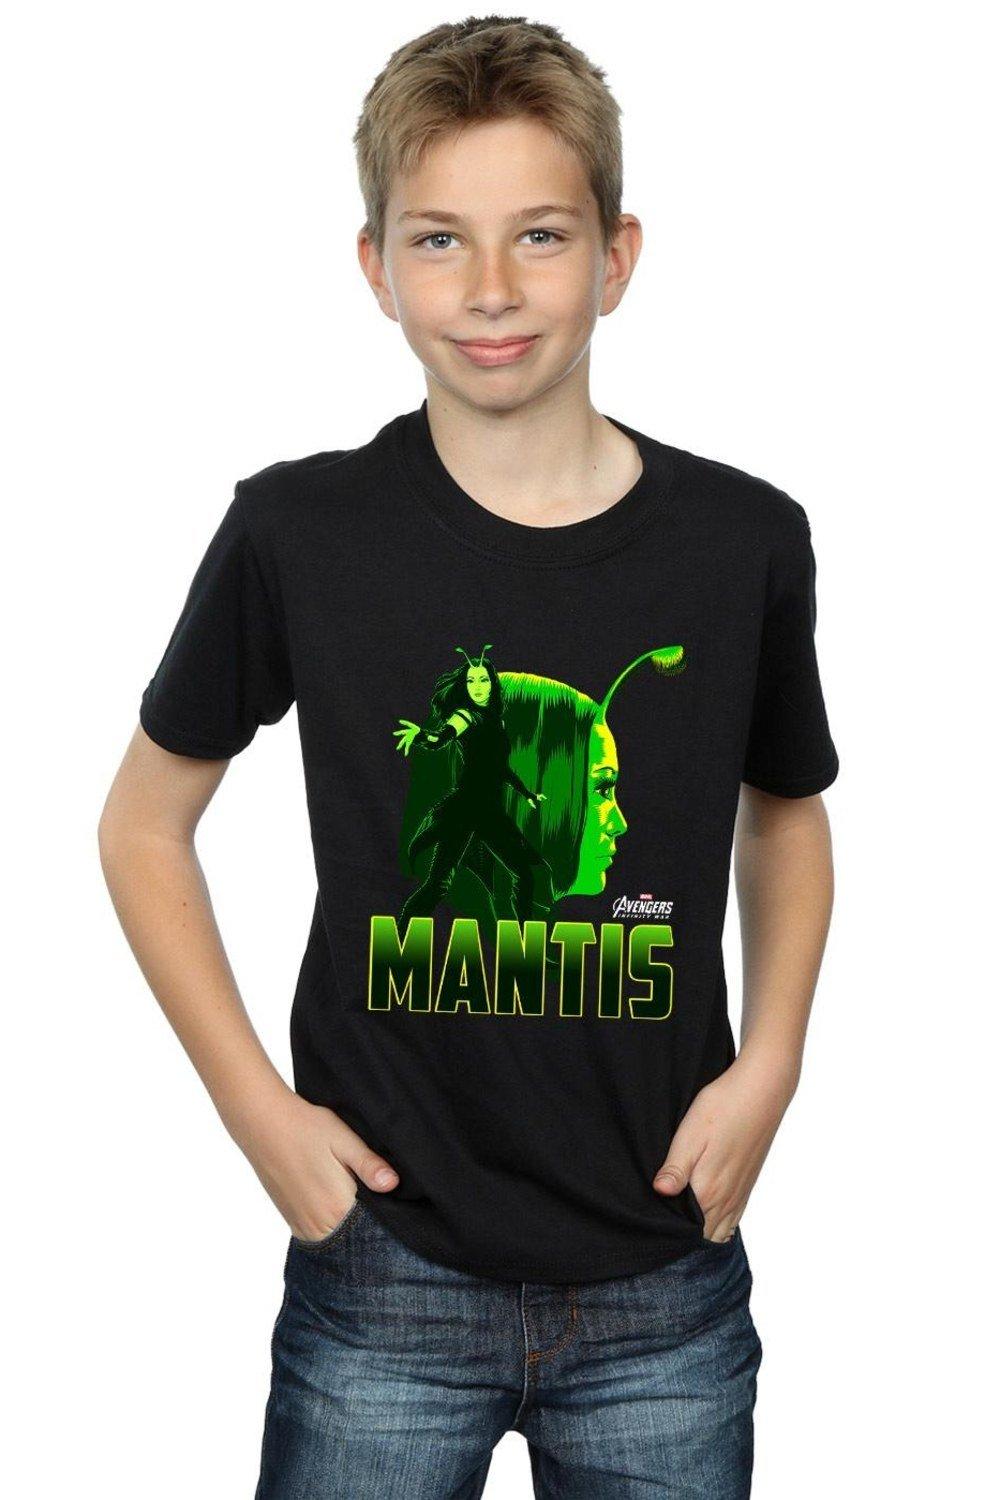 Avengers Infinity War Mantis Character T-Shirt